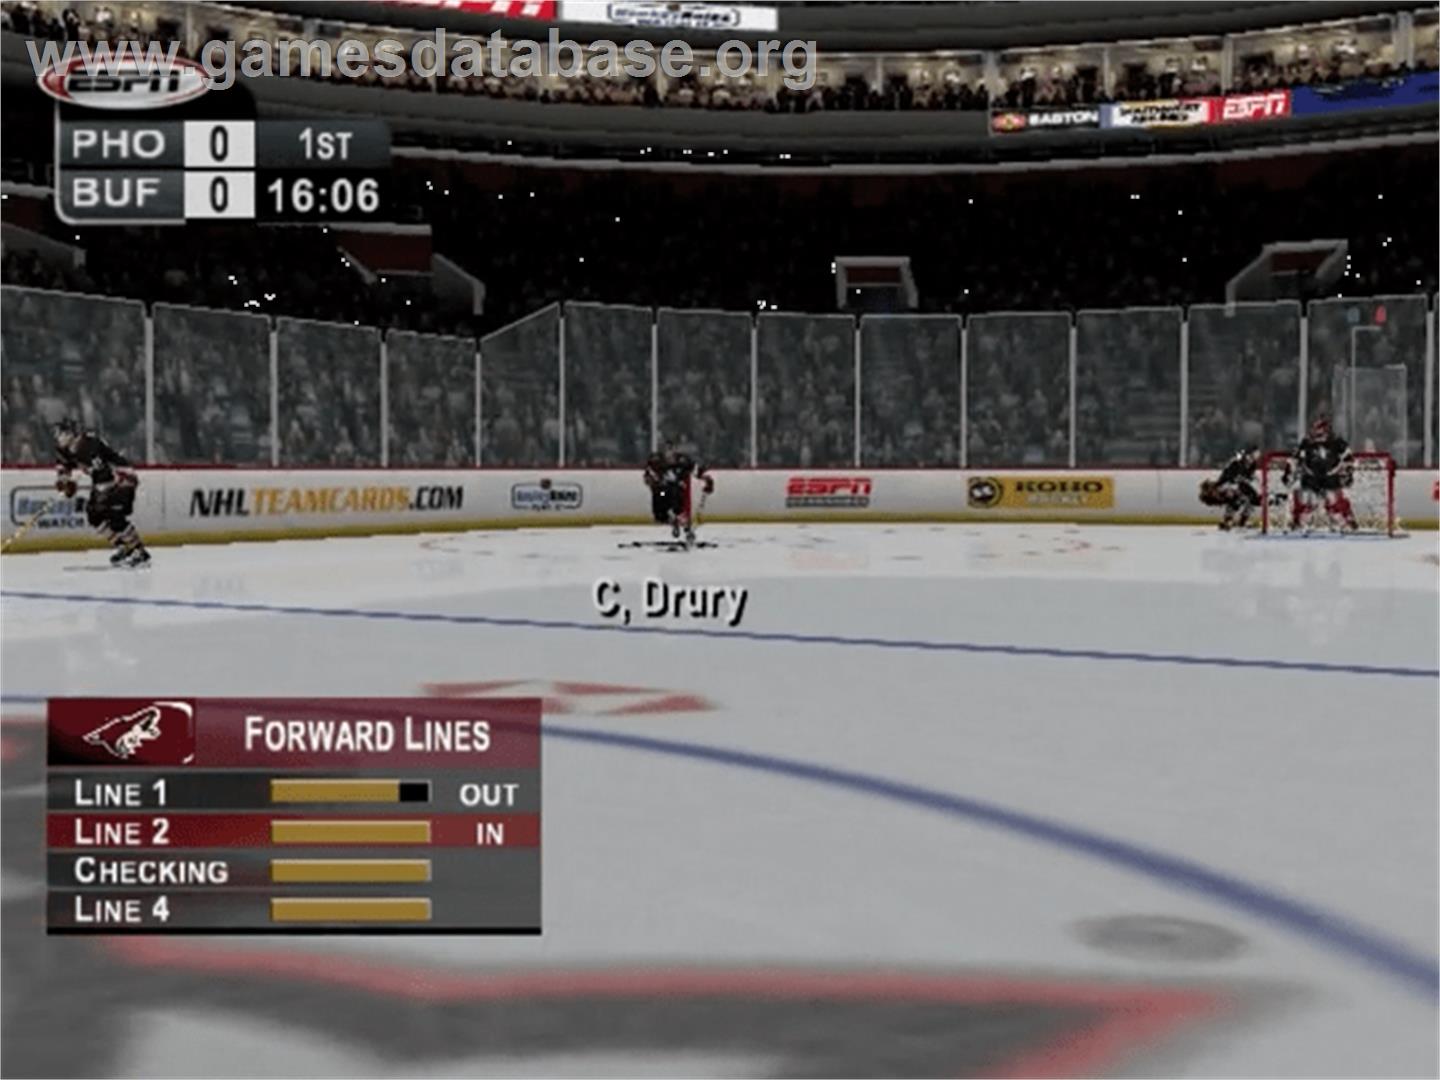 ESPN NHL Hockey - Sony Playstation 2 - Artwork - In Game